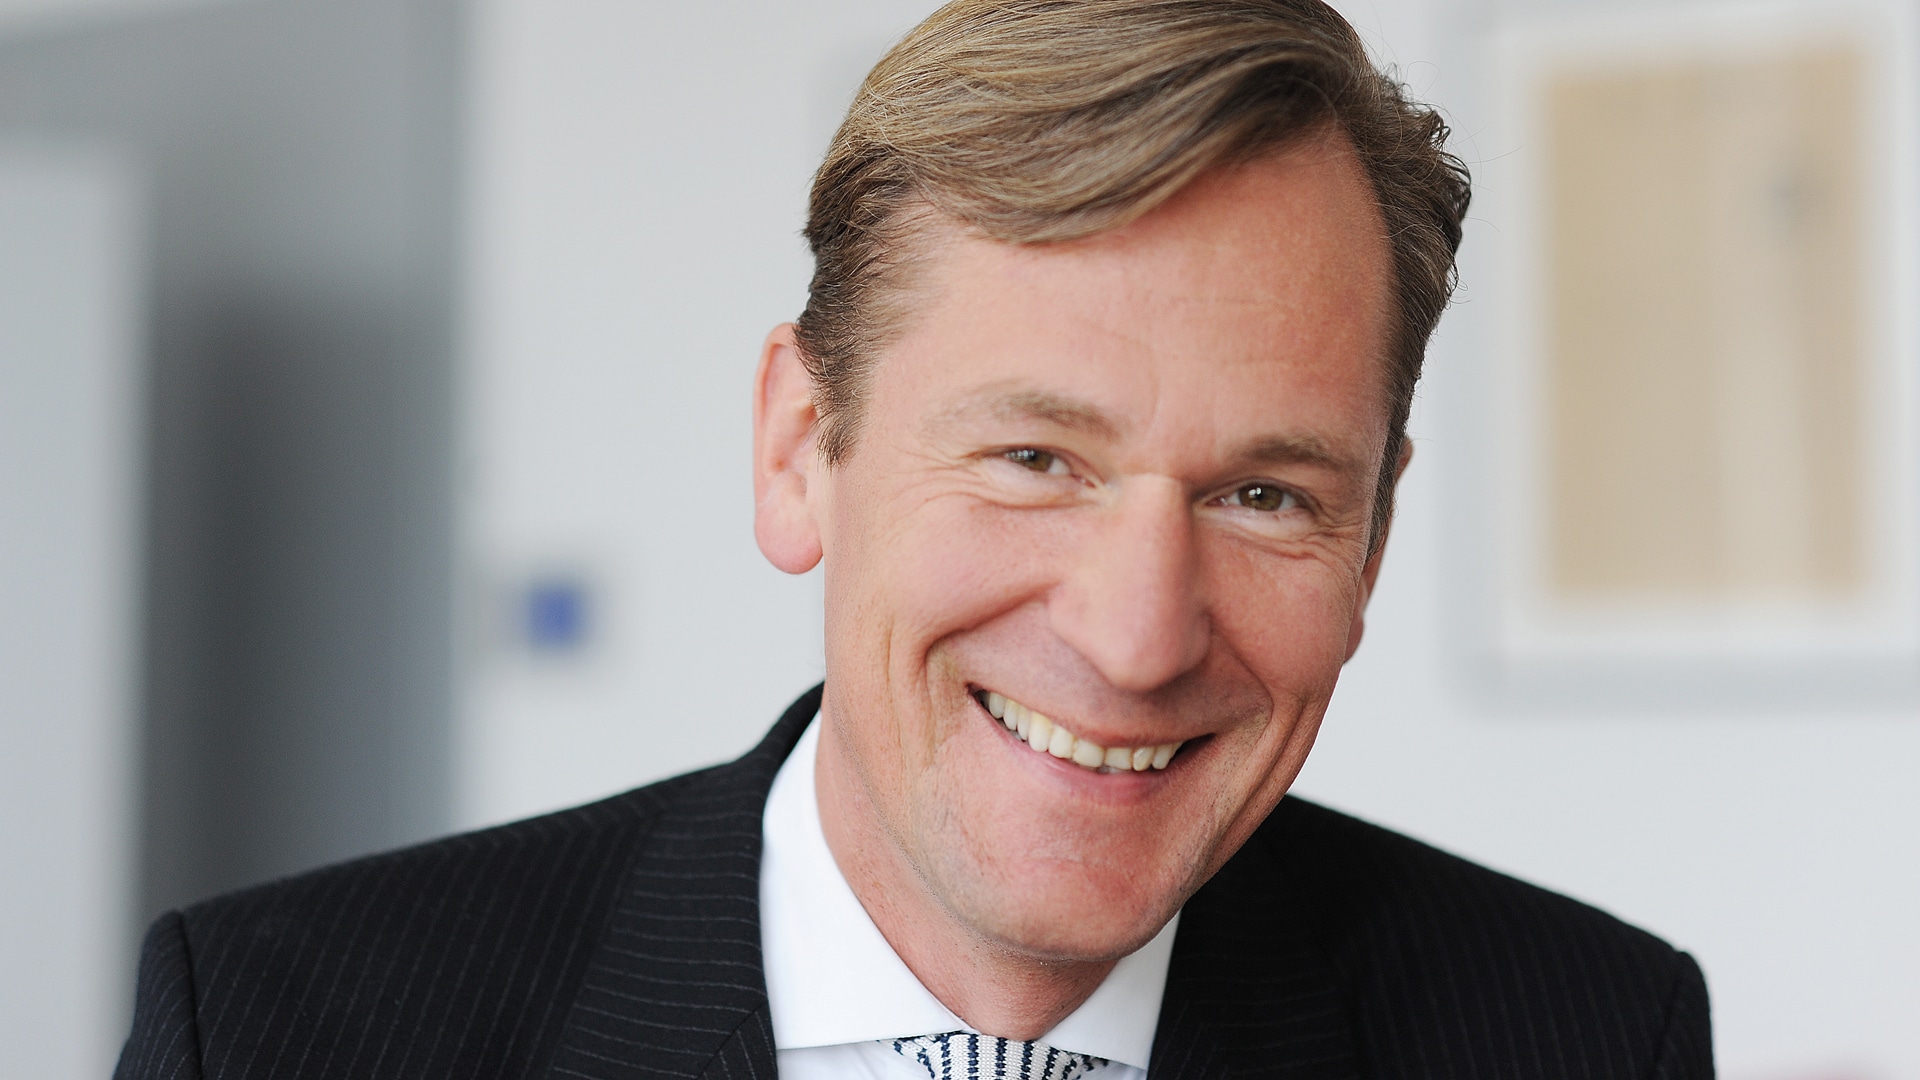 Mathias Döpfner steht an der Spitze des Axel-Springer-Konzerns, zu dem unter anderem die Zeitungen Die Welt und Bild gehören